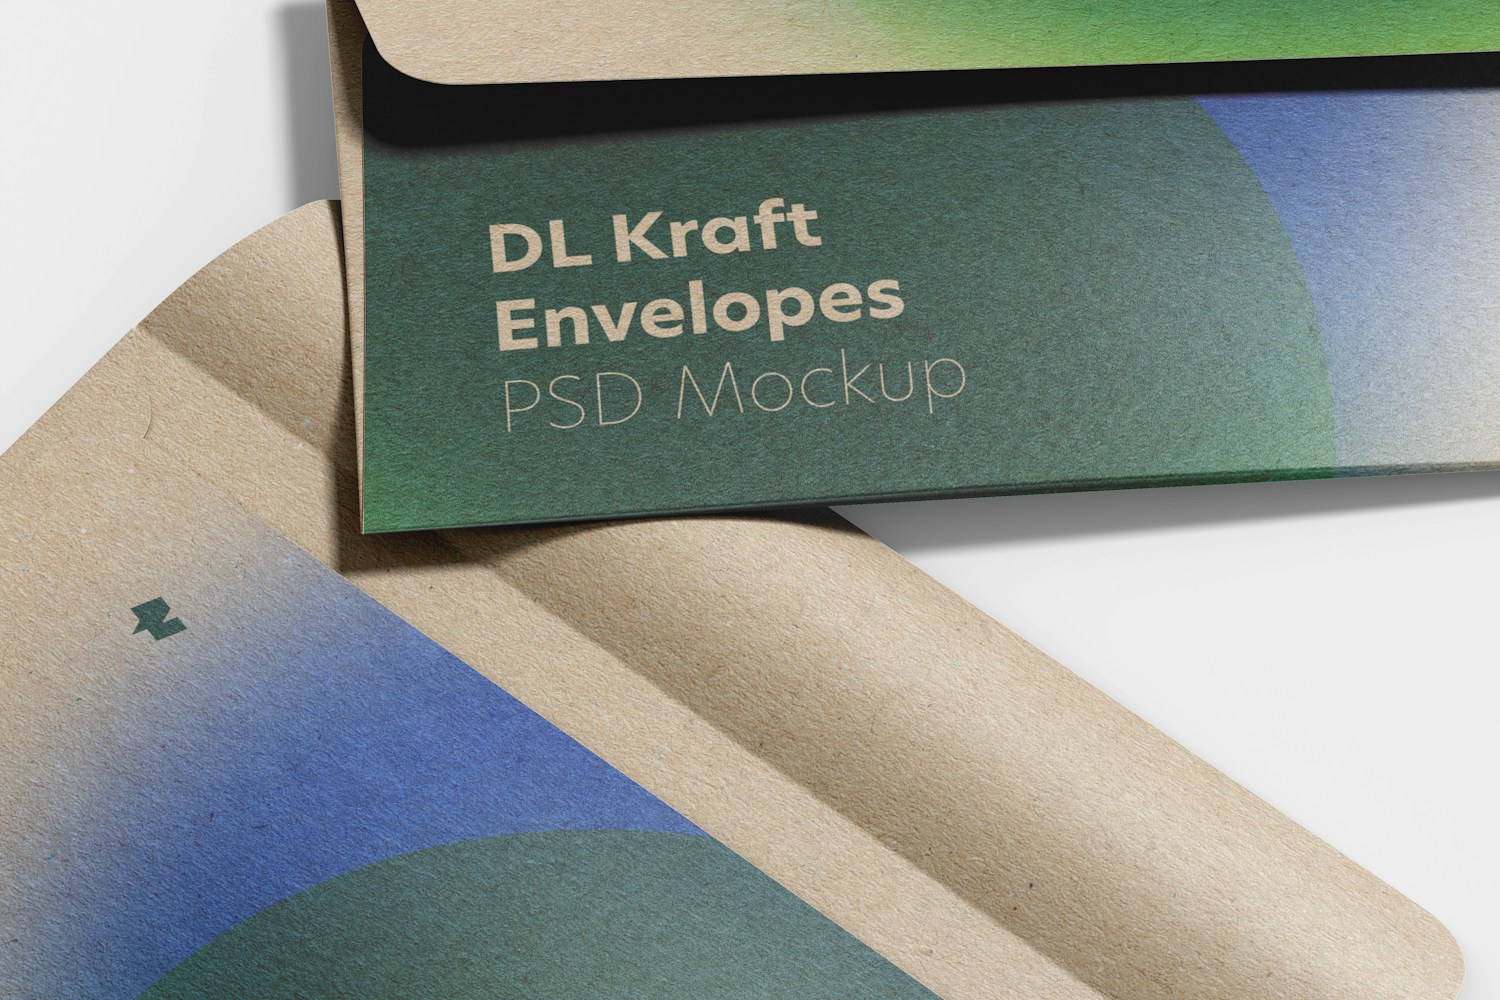 DL Kraft Envelopes Mockup, Close-Up